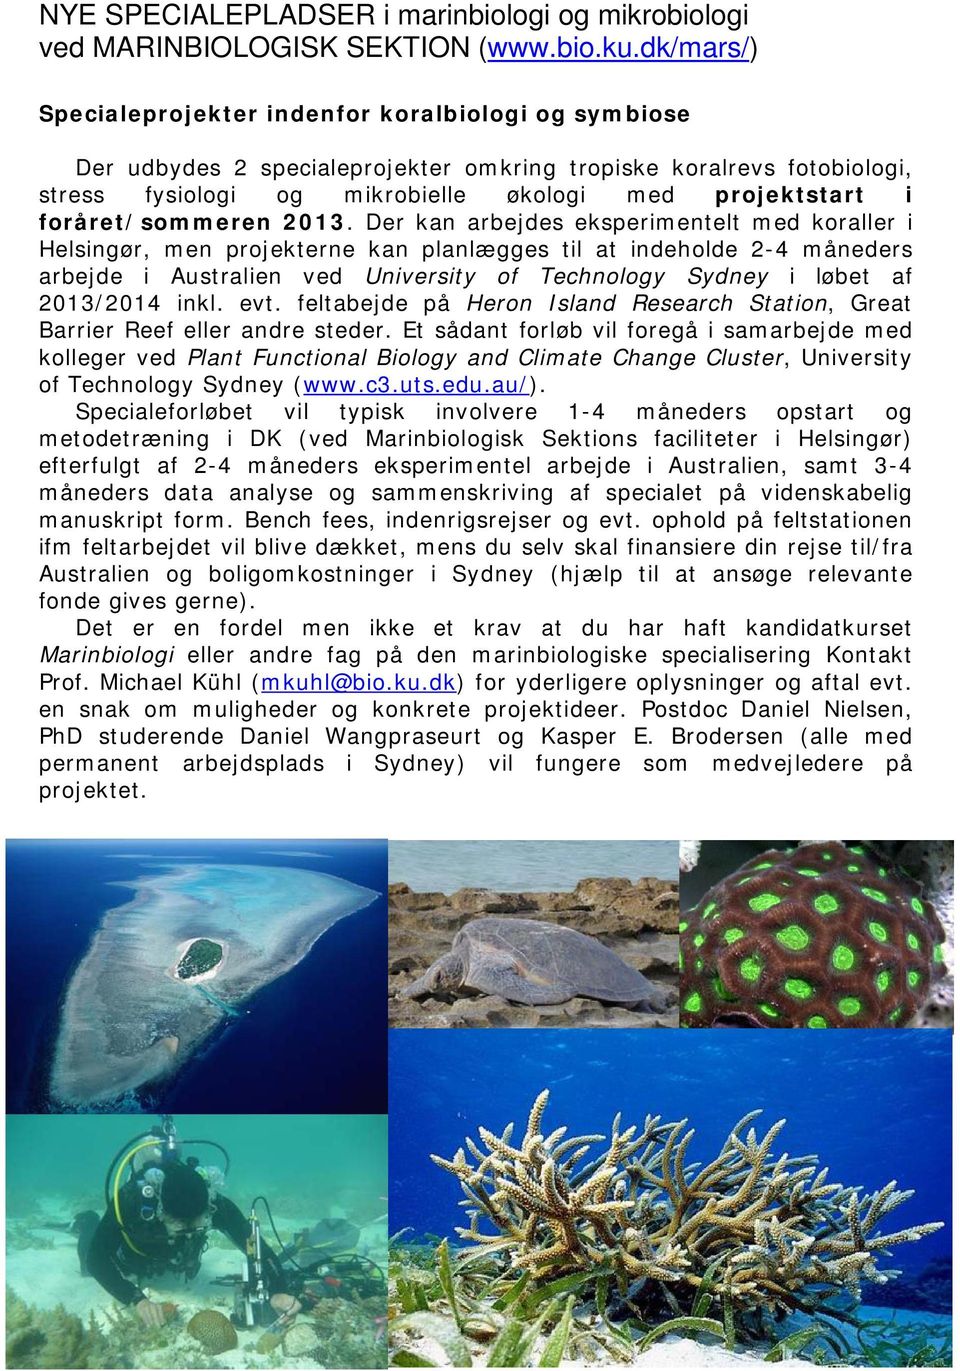 2013/2014 inkl. evt. feltabejde på Heron Island Research Station, Great Barrier Reef eller andre steder.